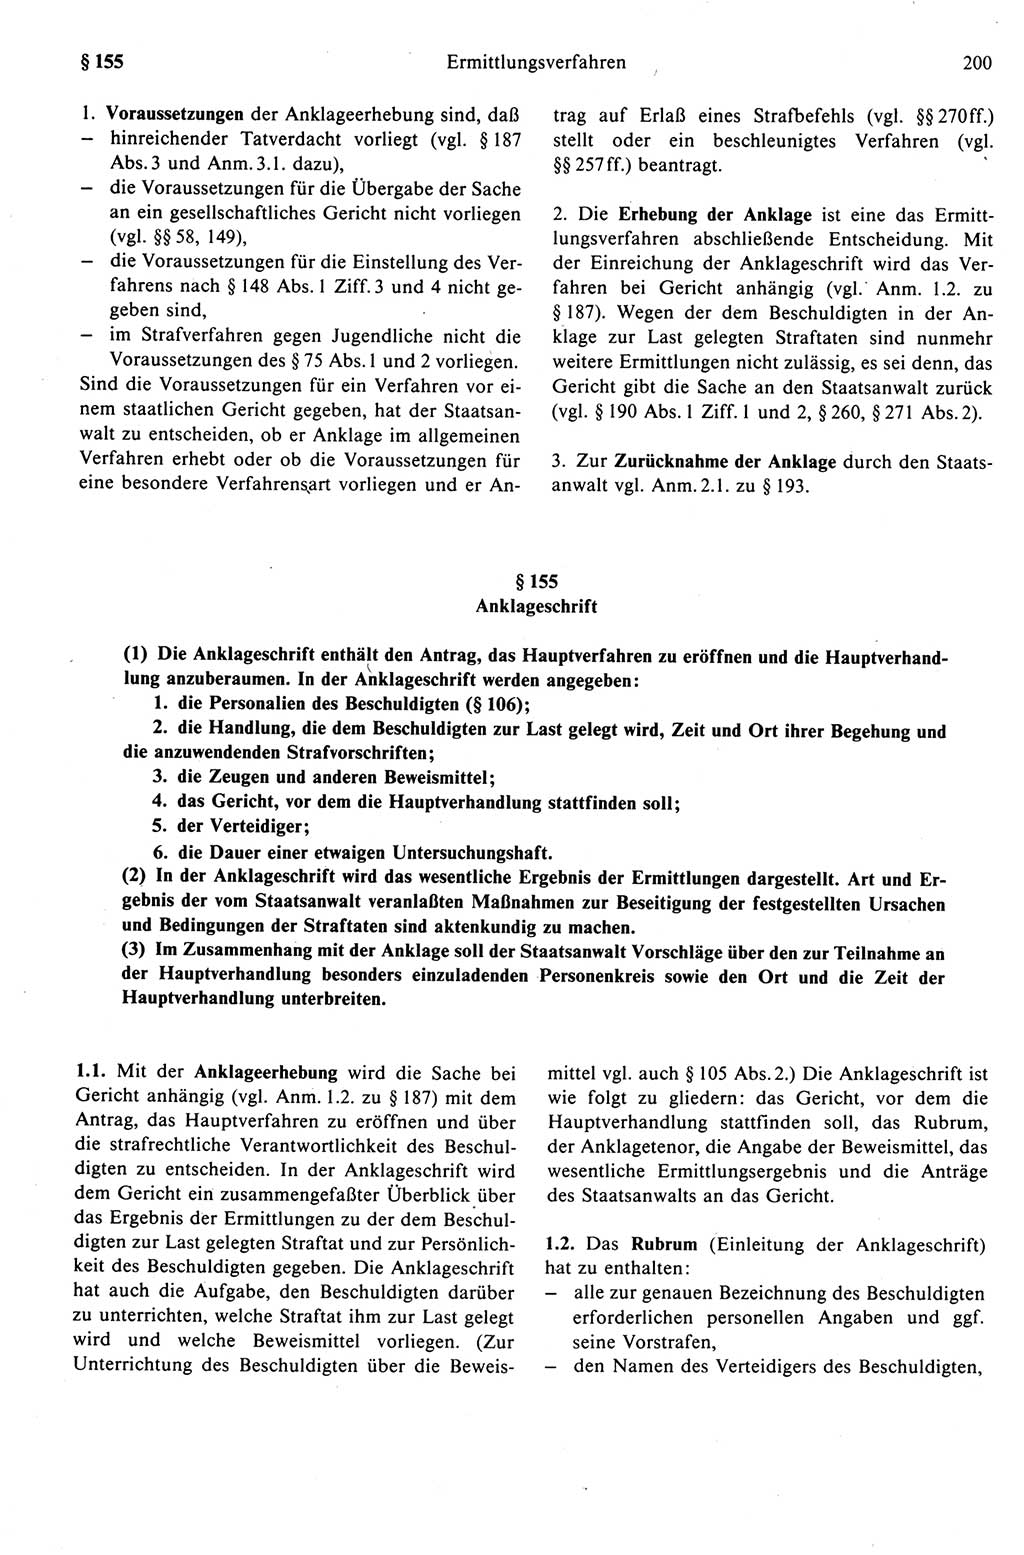 Strafprozeßrecht der DDR (Deutsche Demokratische Republik), Kommentar zur Strafprozeßordnung (StPO) 1989, Seite 200 (Strafprozeßr. DDR Komm. StPO 1989, S. 200)